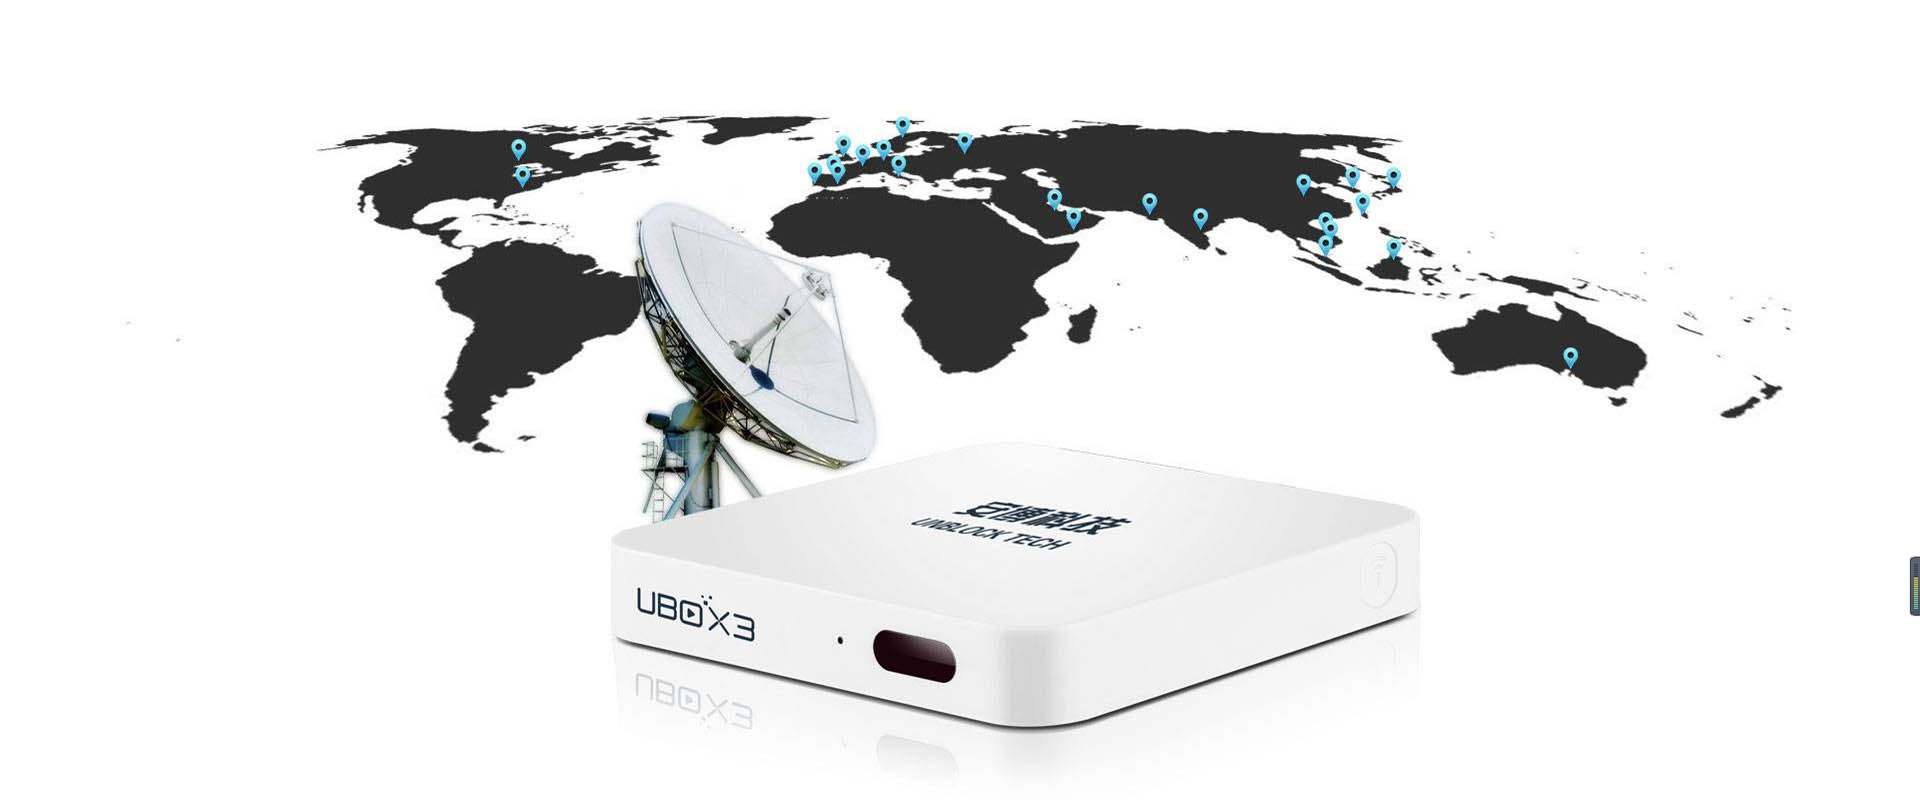 UBOX3 - เลิกบล็อกเทค Ubox3 | กล่องสมาร์ทมีเดียเพลเยอร์ Gen 3 Pro